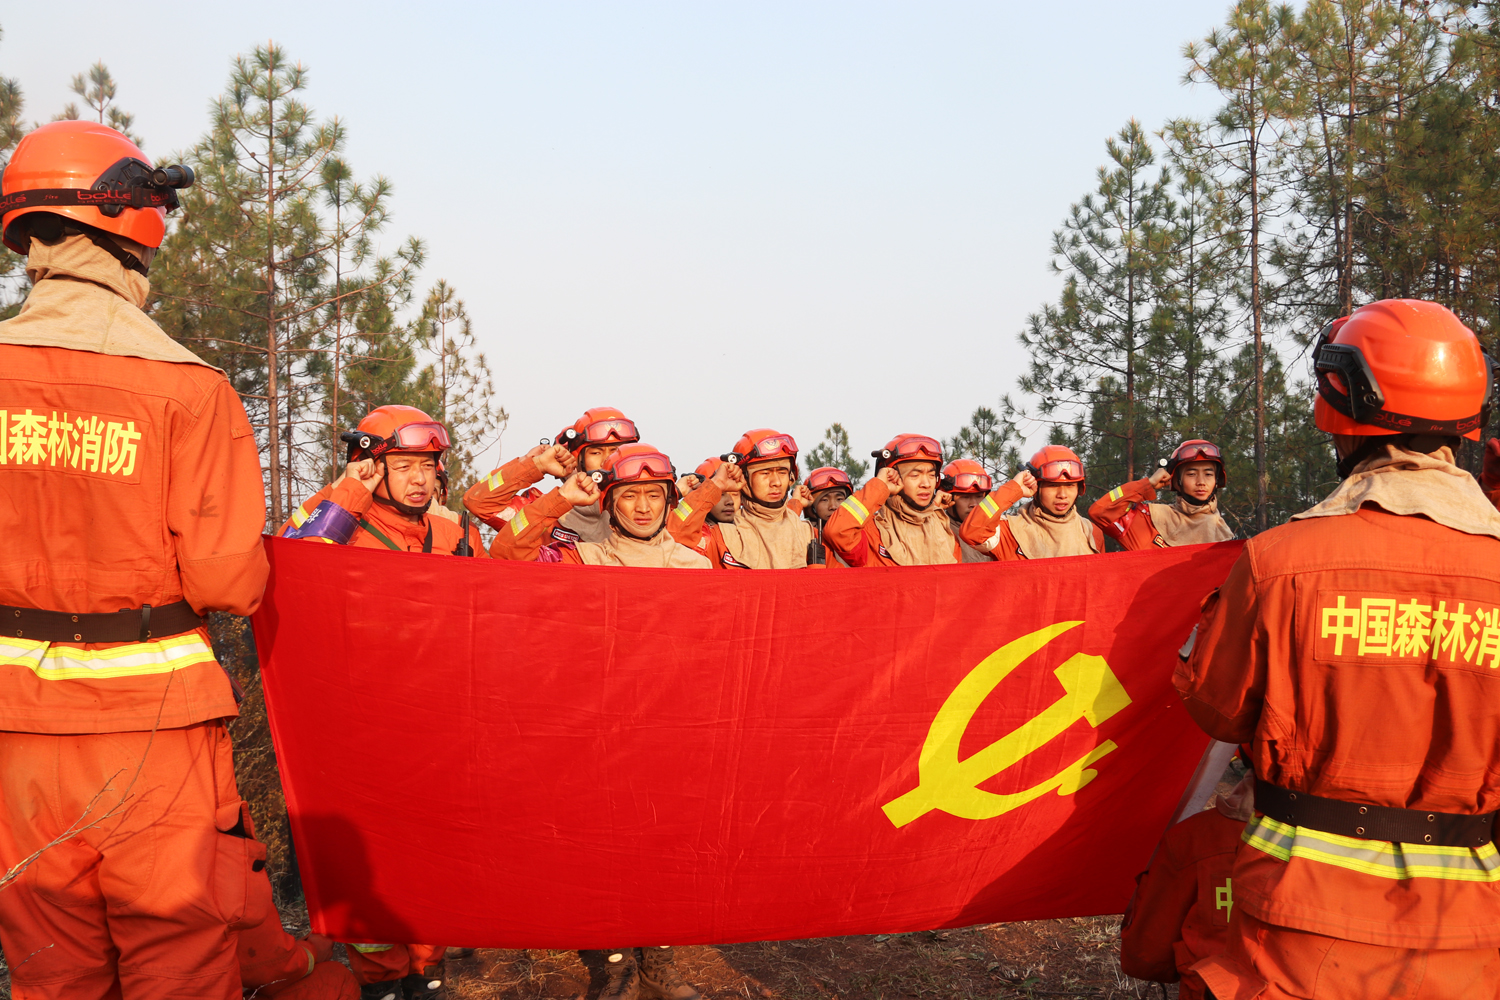 云南省森林消防总队丽江市支队古城区中队党支部被命名为“中央和国家机关‘四强’党支部”